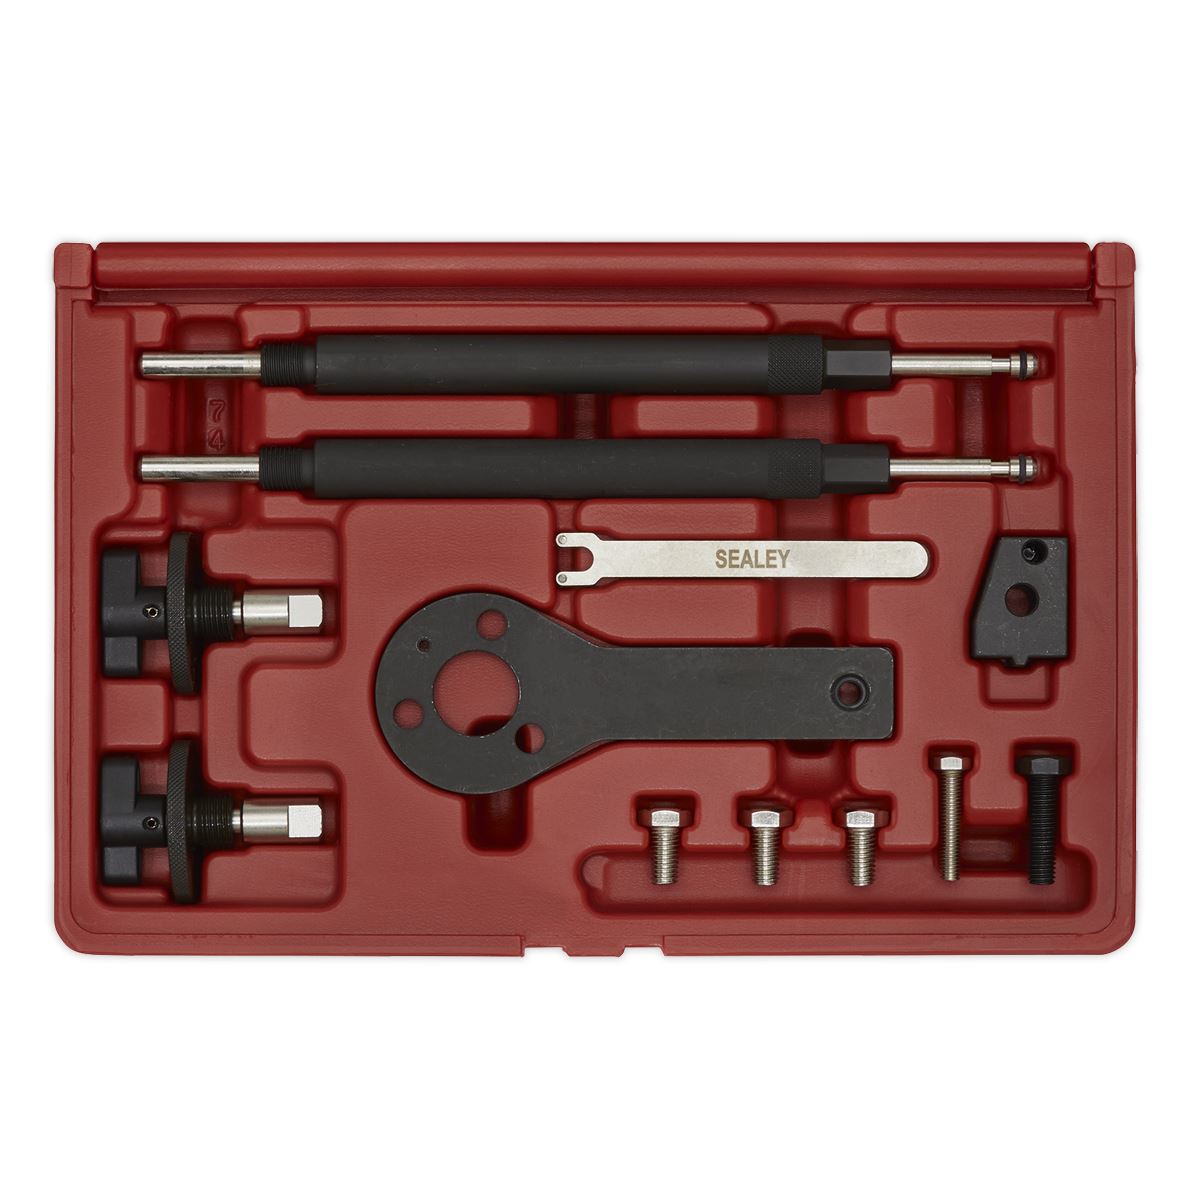 Sealey Petrol Engine Timing Tool Kit - for Alfa Romeo, Fiat, Lancia 1.2, 1.4 16v, 1.4 T-Jet - Belt Drive